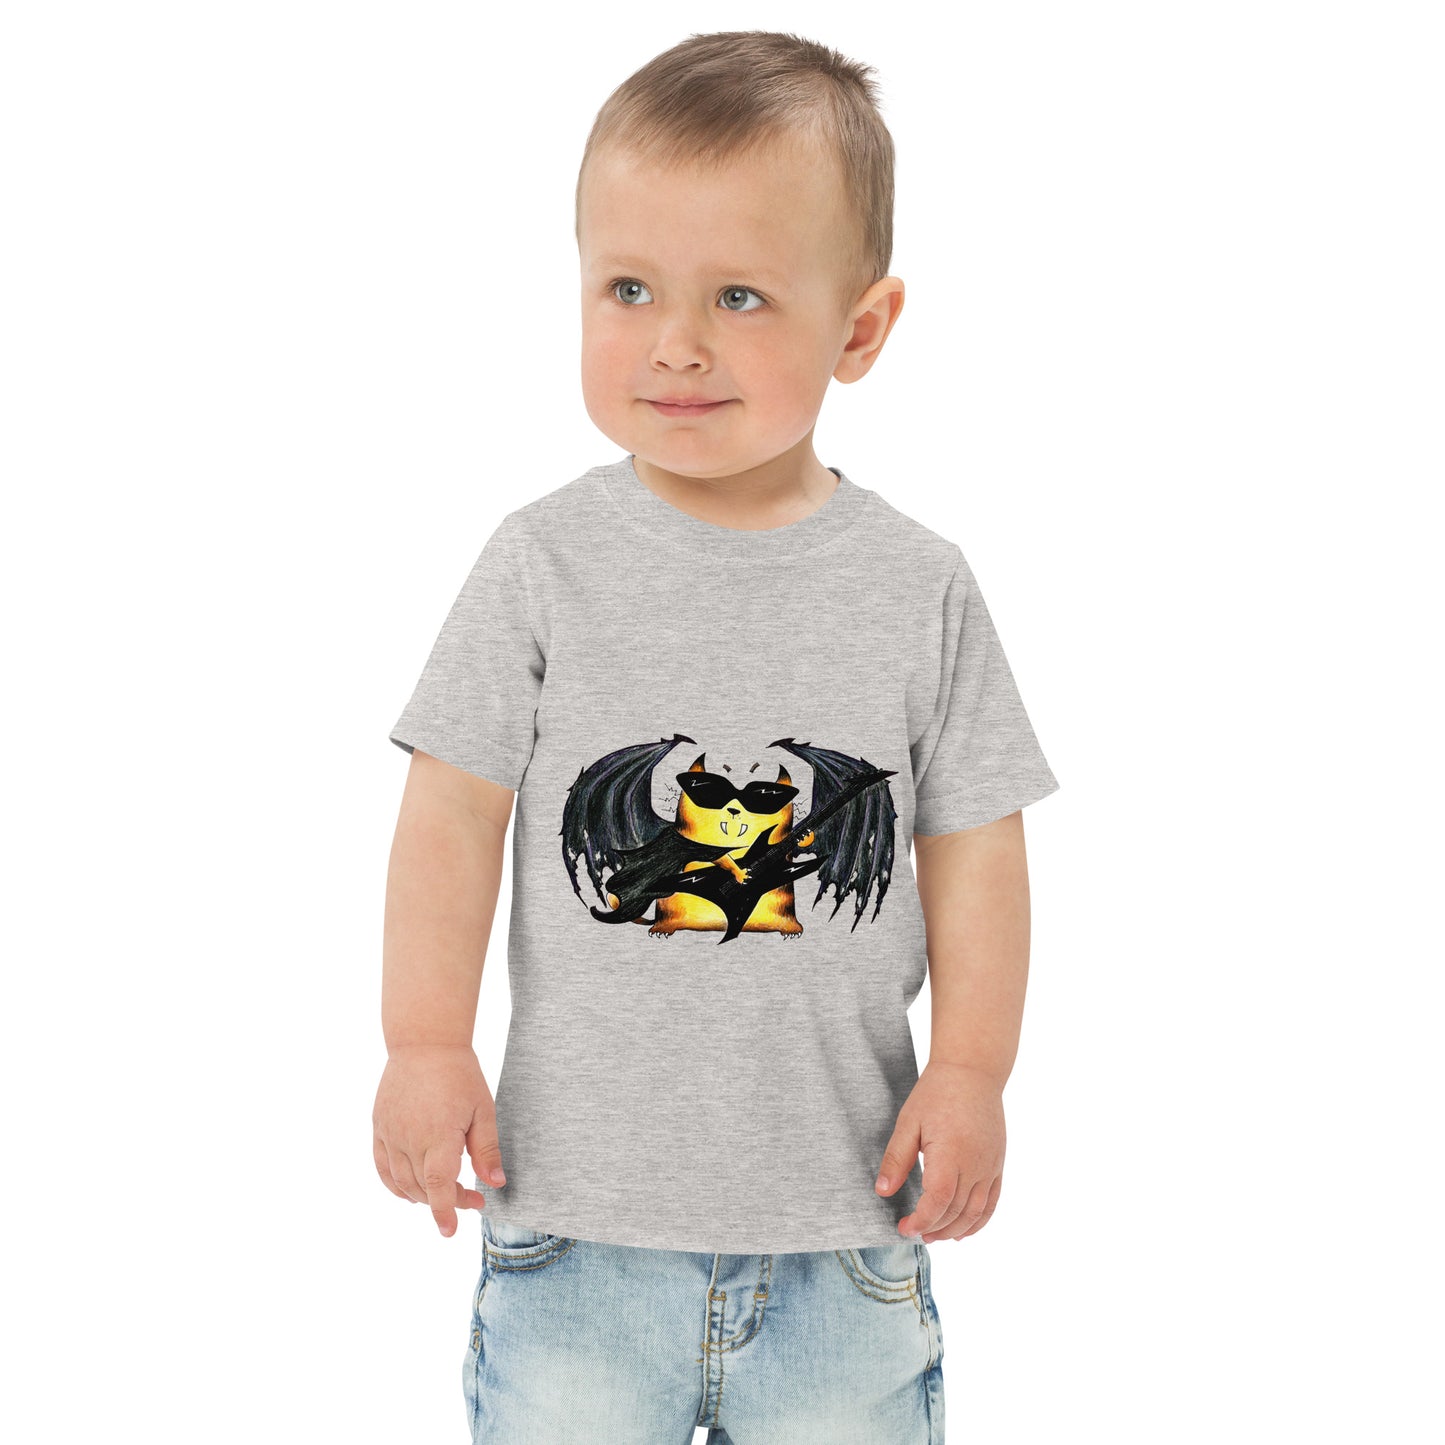 Toddler T-shirt "Halloween Cat"